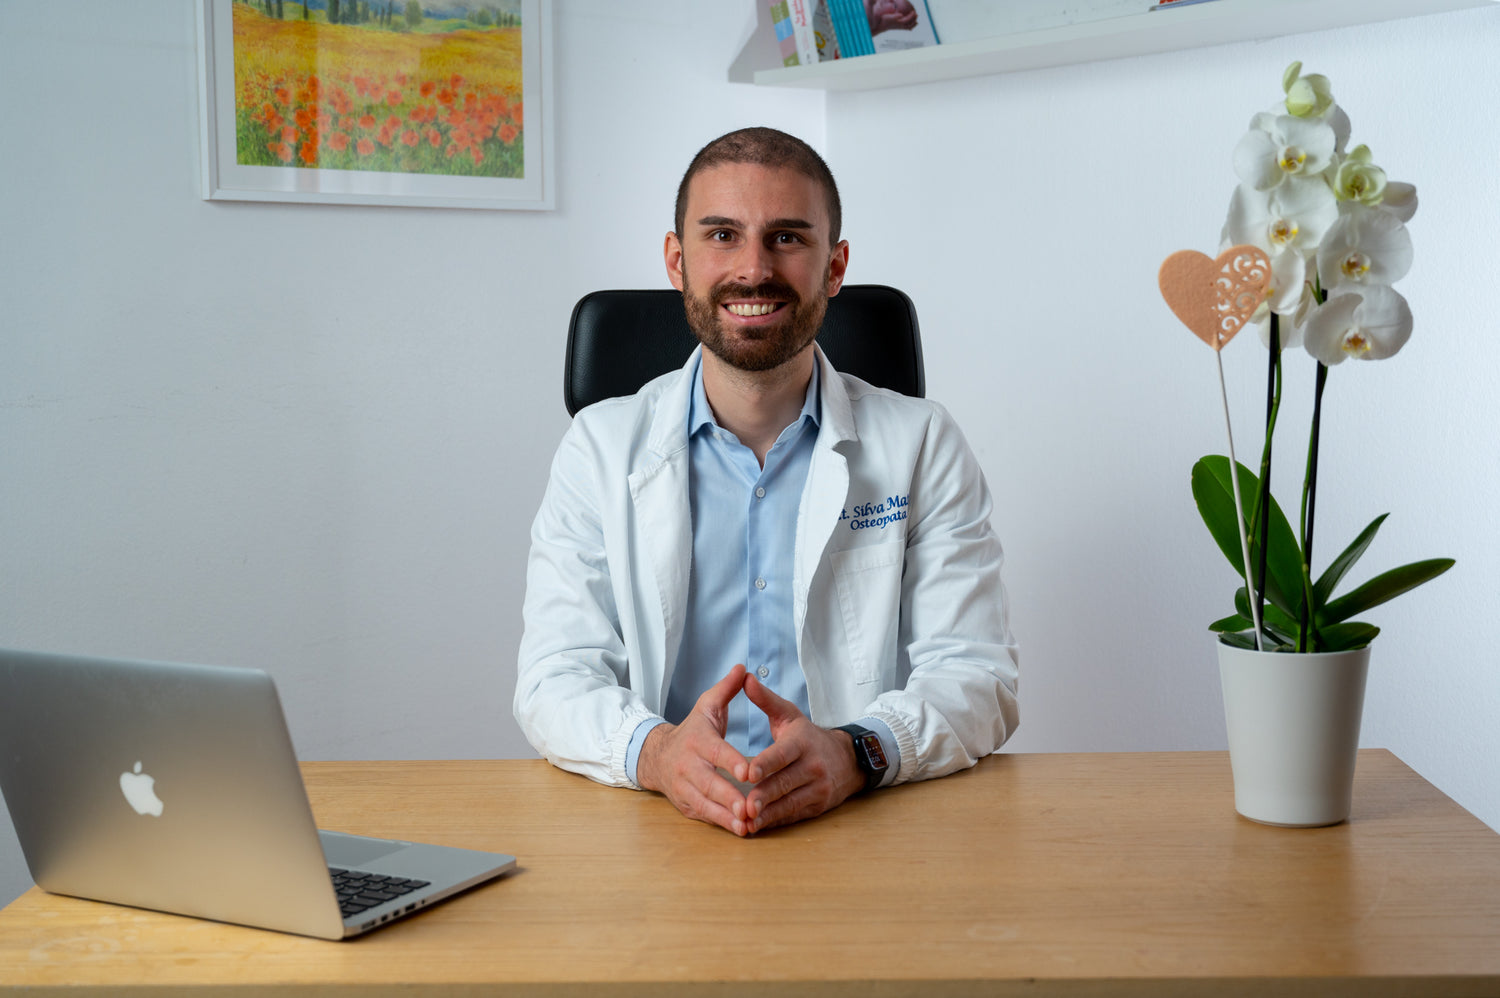 Dott. Matteo Silva - osteopata pediatrico, fondatore di Yule e proprietario del brand Drsilva e sito Dr-silva.com